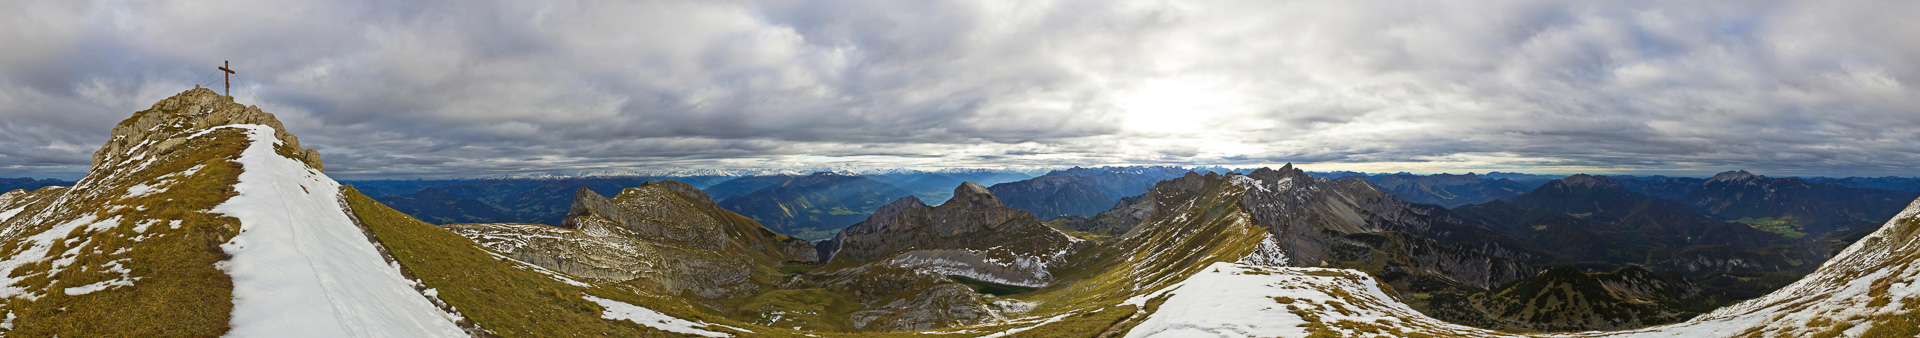 Links die Rofanspitze, in der Mitte Haidachstellwand, Karwendel und Hochiss, rechts der Guffert.